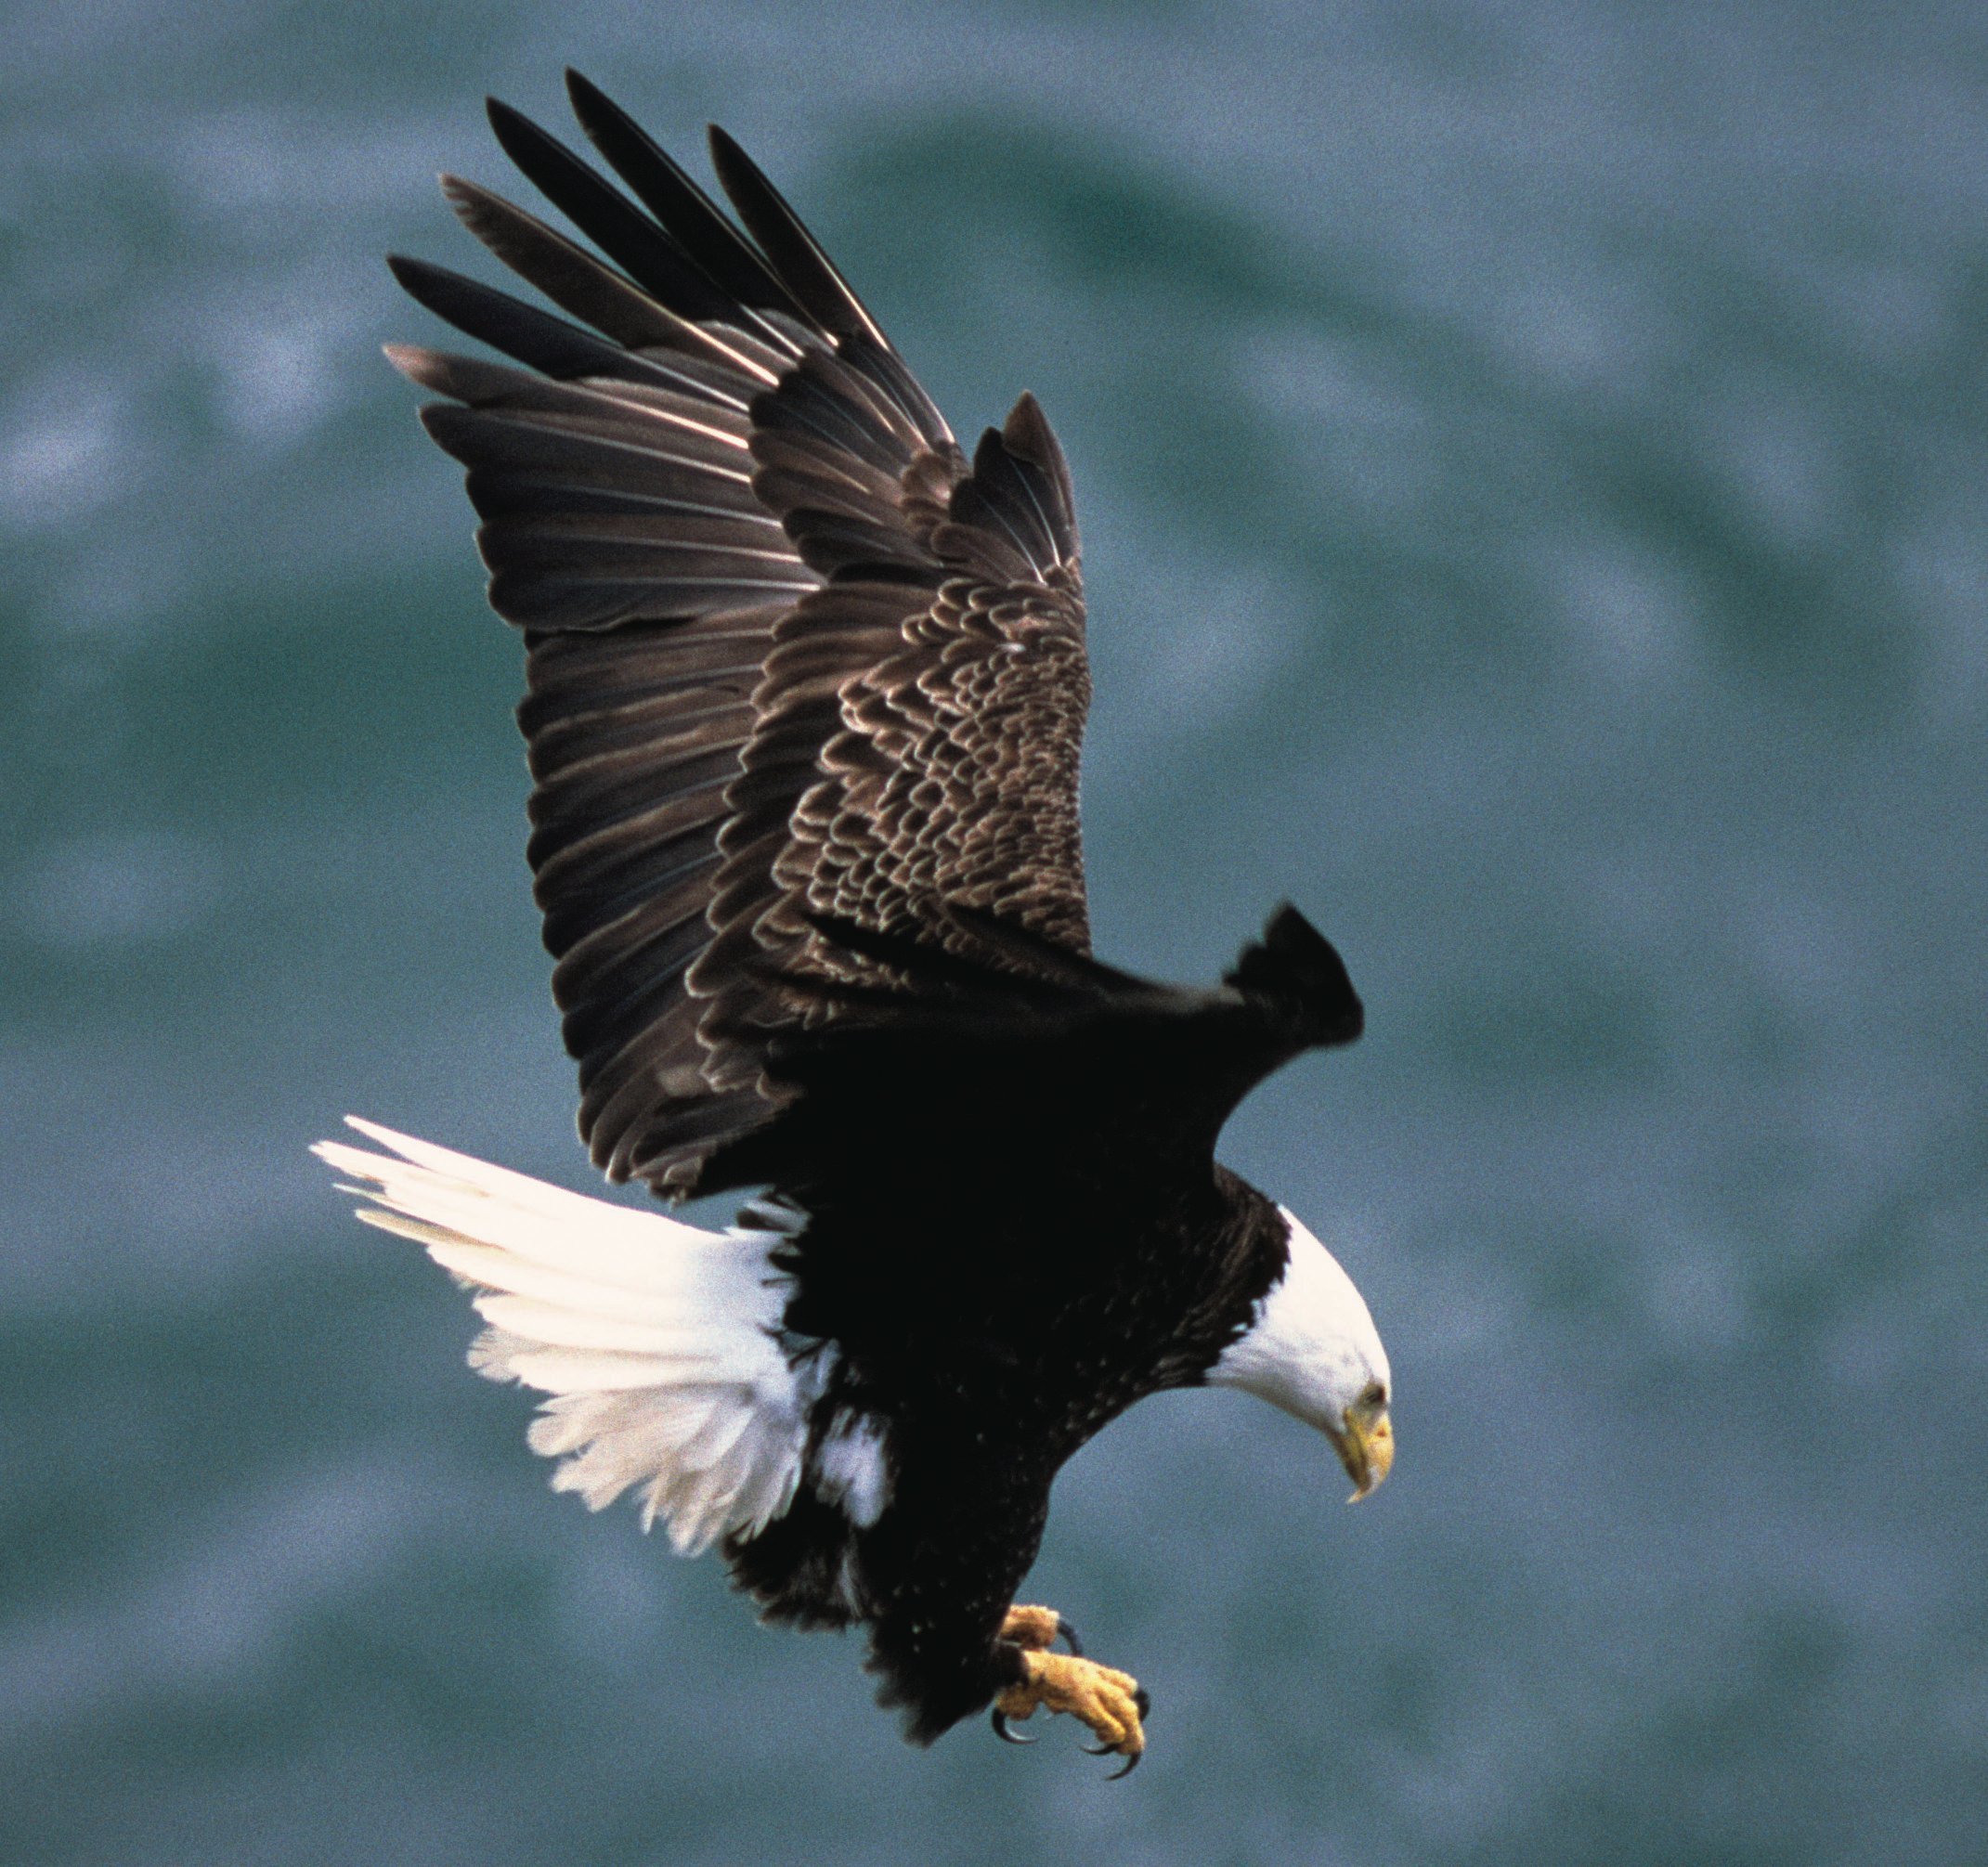 The Bald Eagle – Ornithology